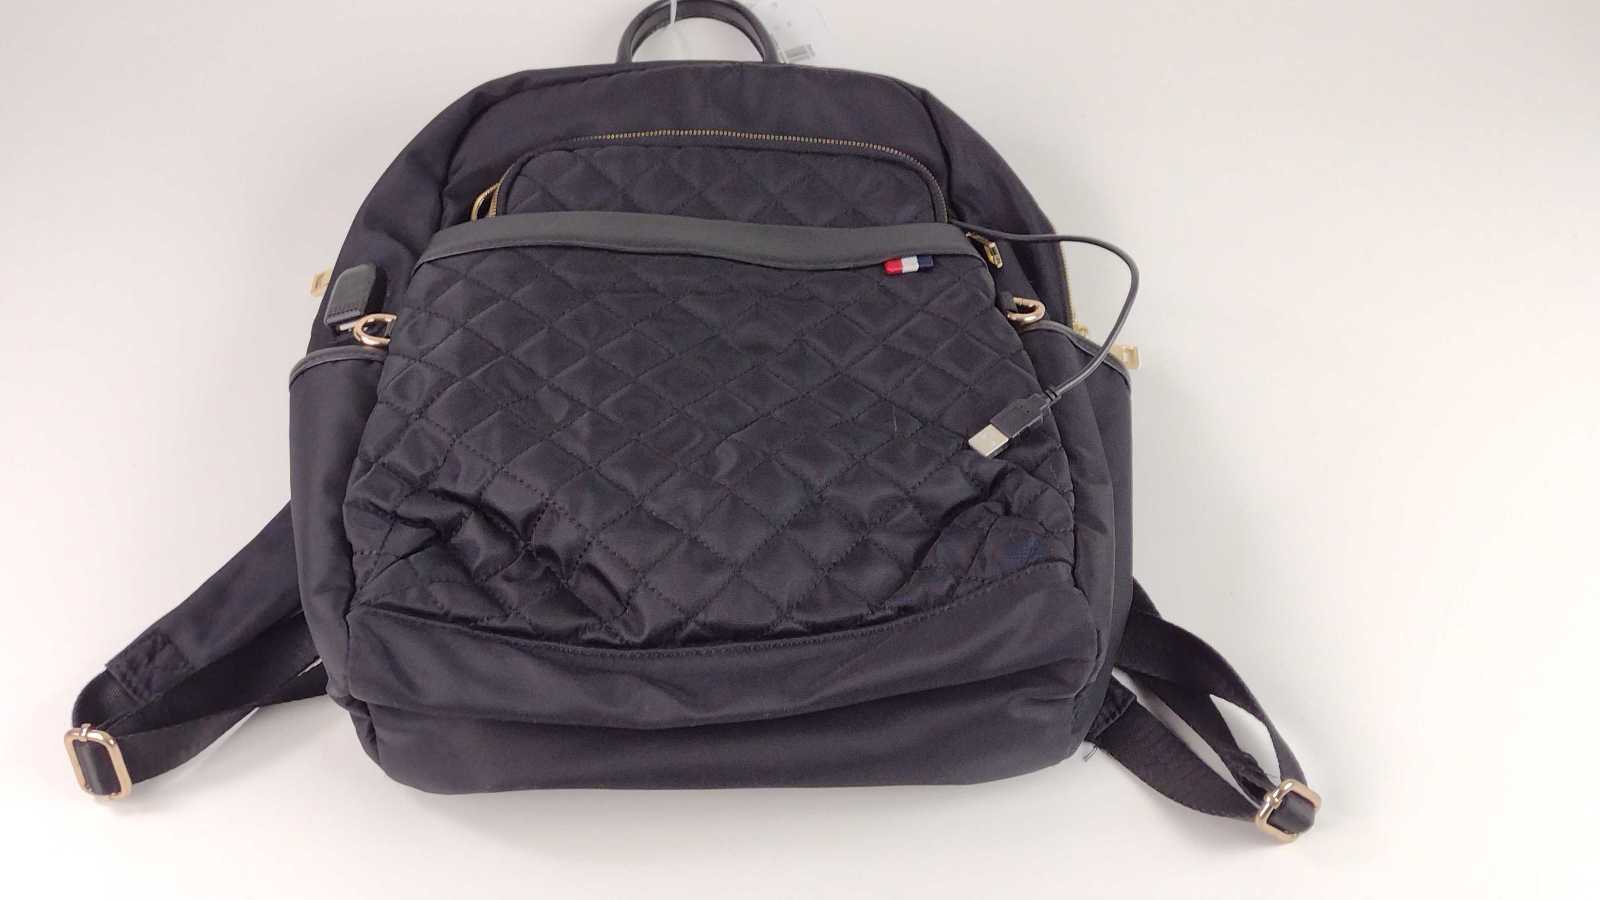 Modernistlook LUXE – Smart Backpack / Laptop Bag - Black USB Port